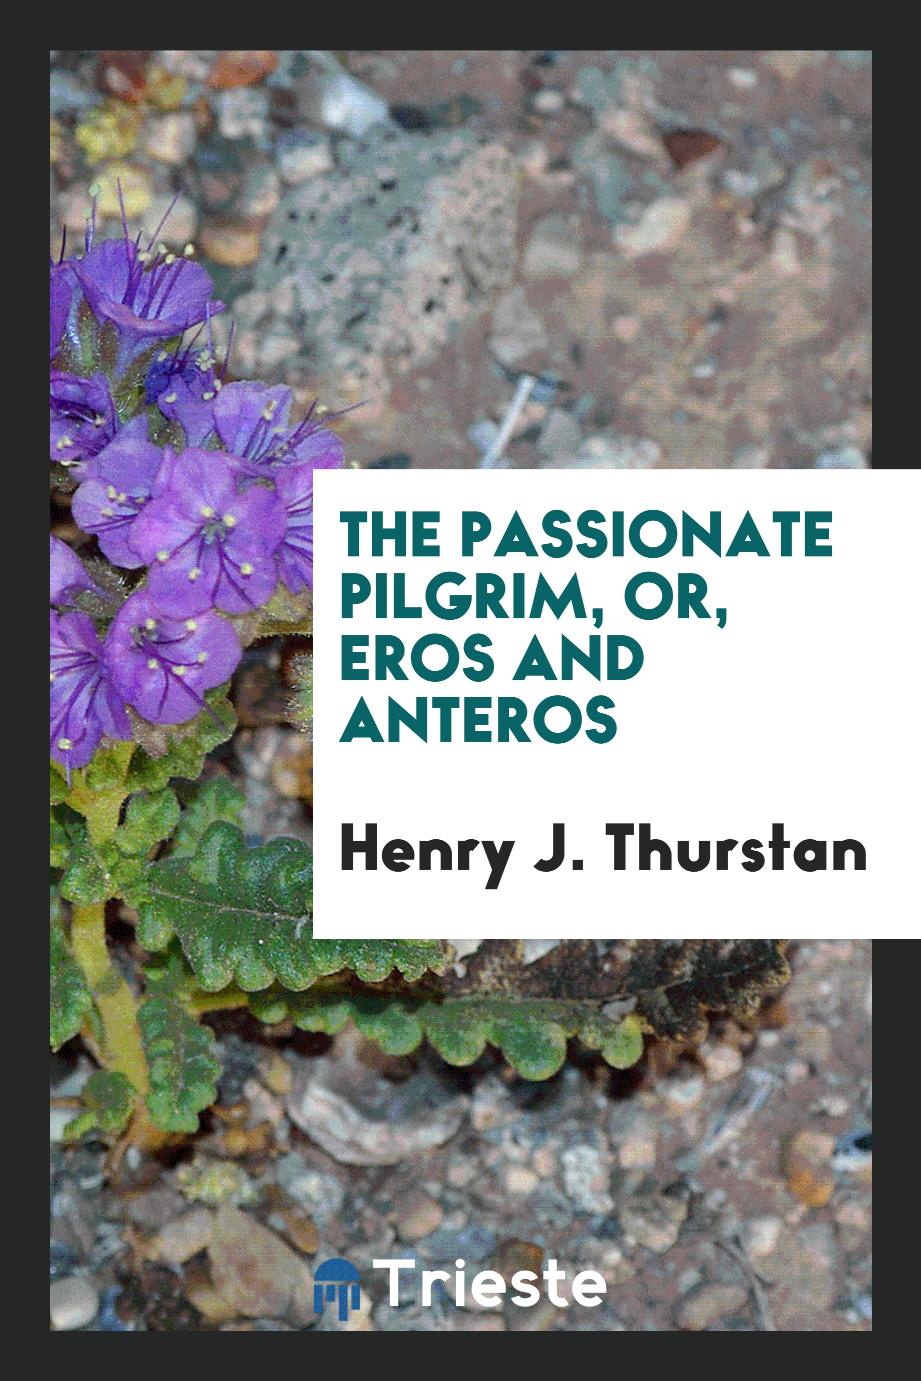 The Passionate Pilgrim, or, Eros and Anteros